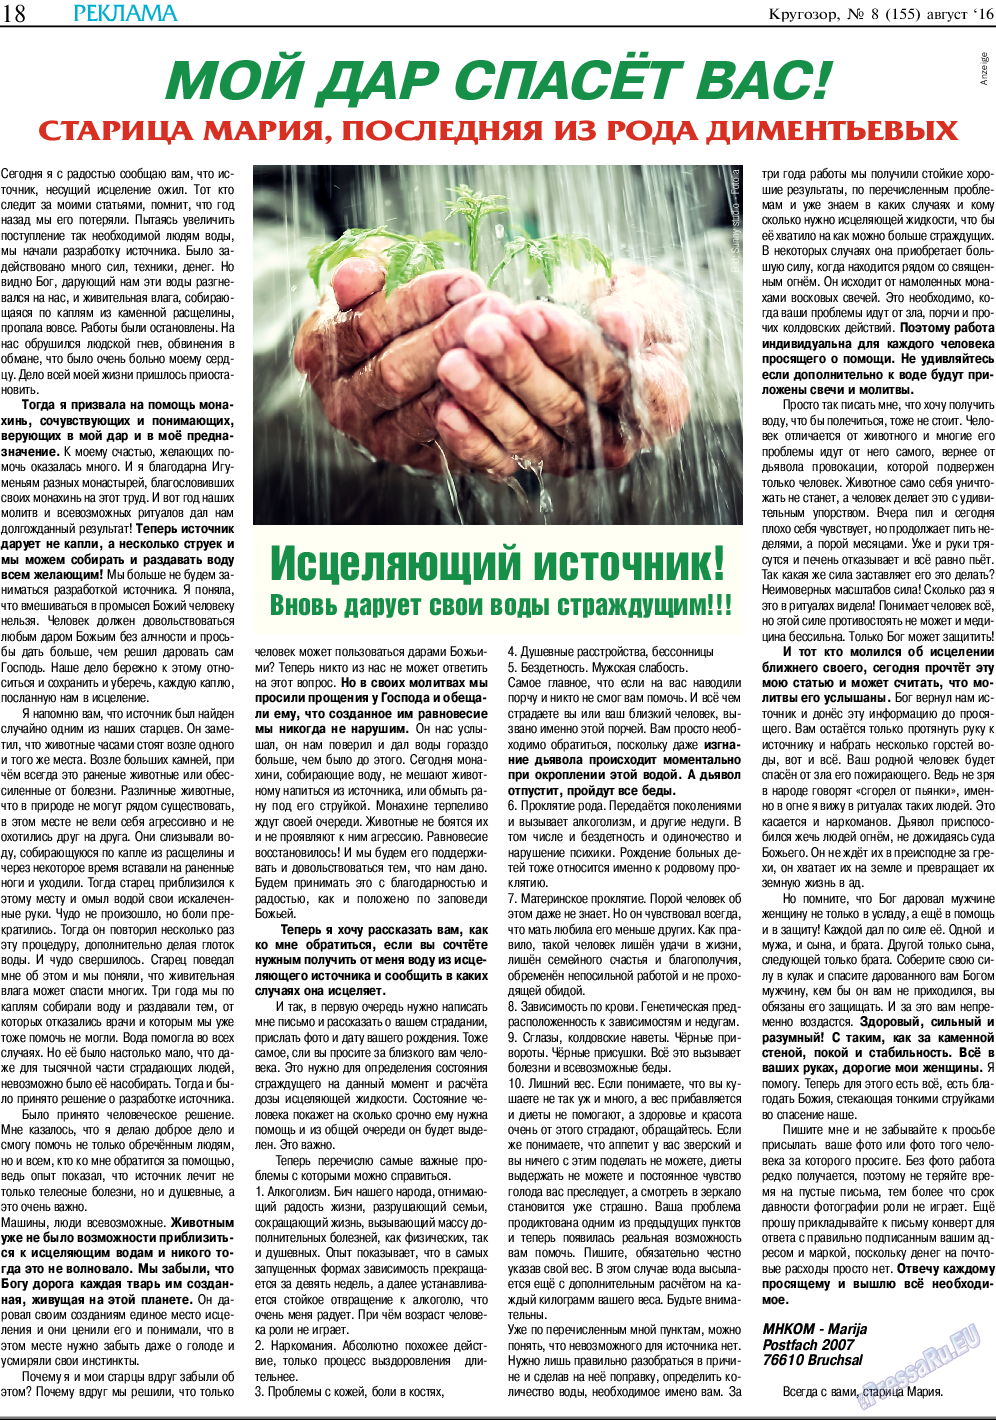 Кругозор, газета. 2016 №8 стр.18